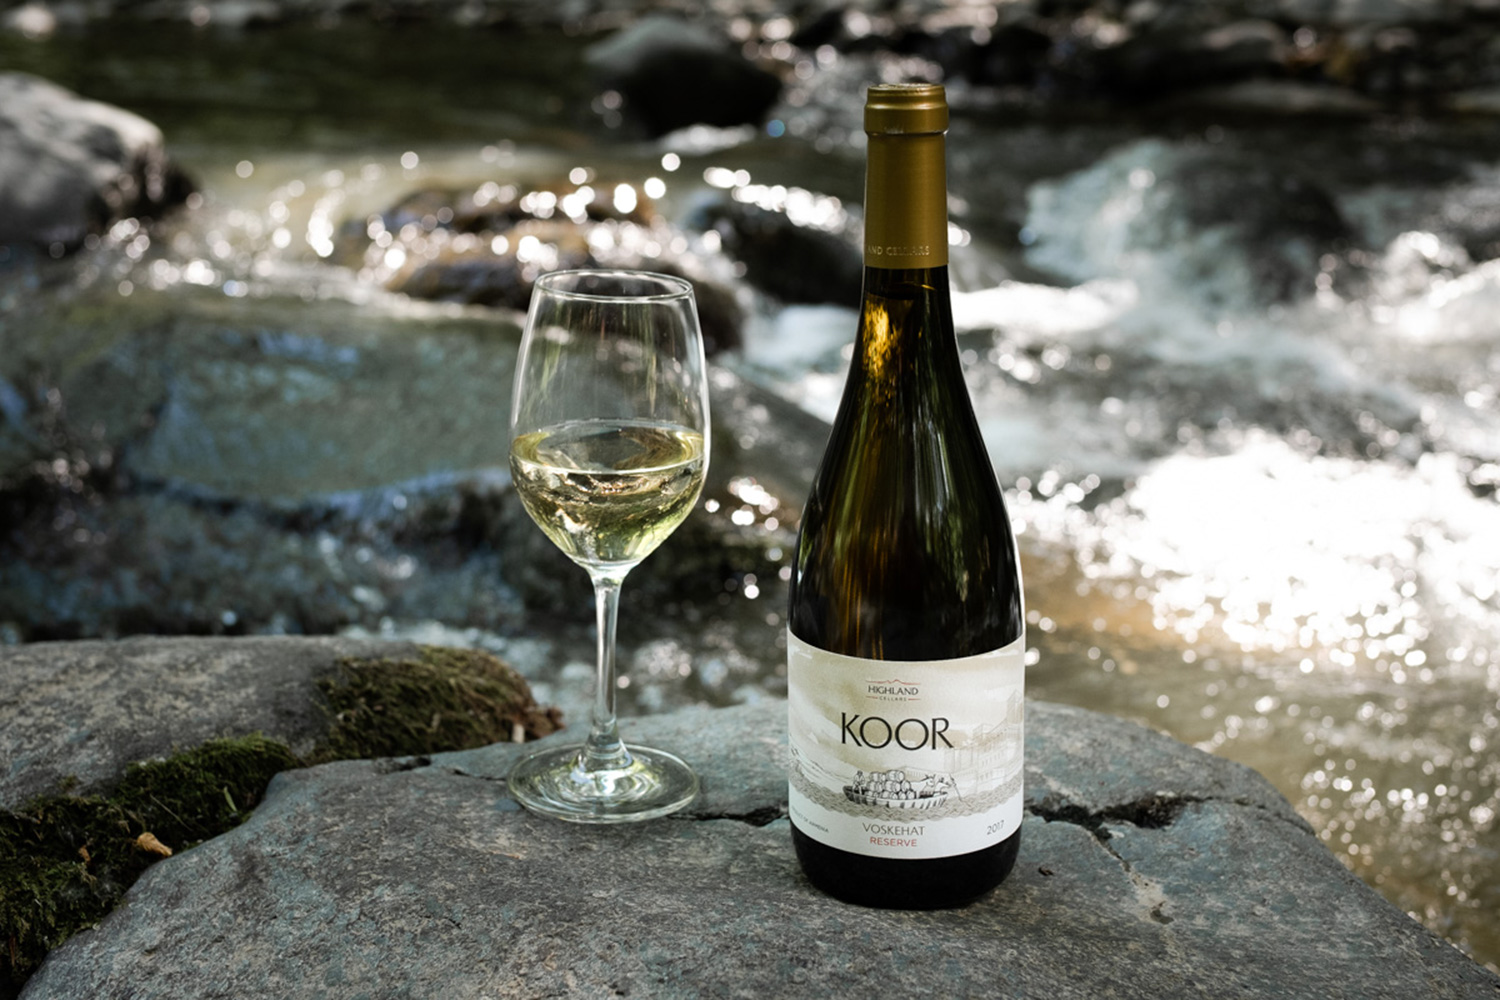 KOOR White Reserve գինին Ճապոնիայում երկու ոսկե մեդալ է ստացել